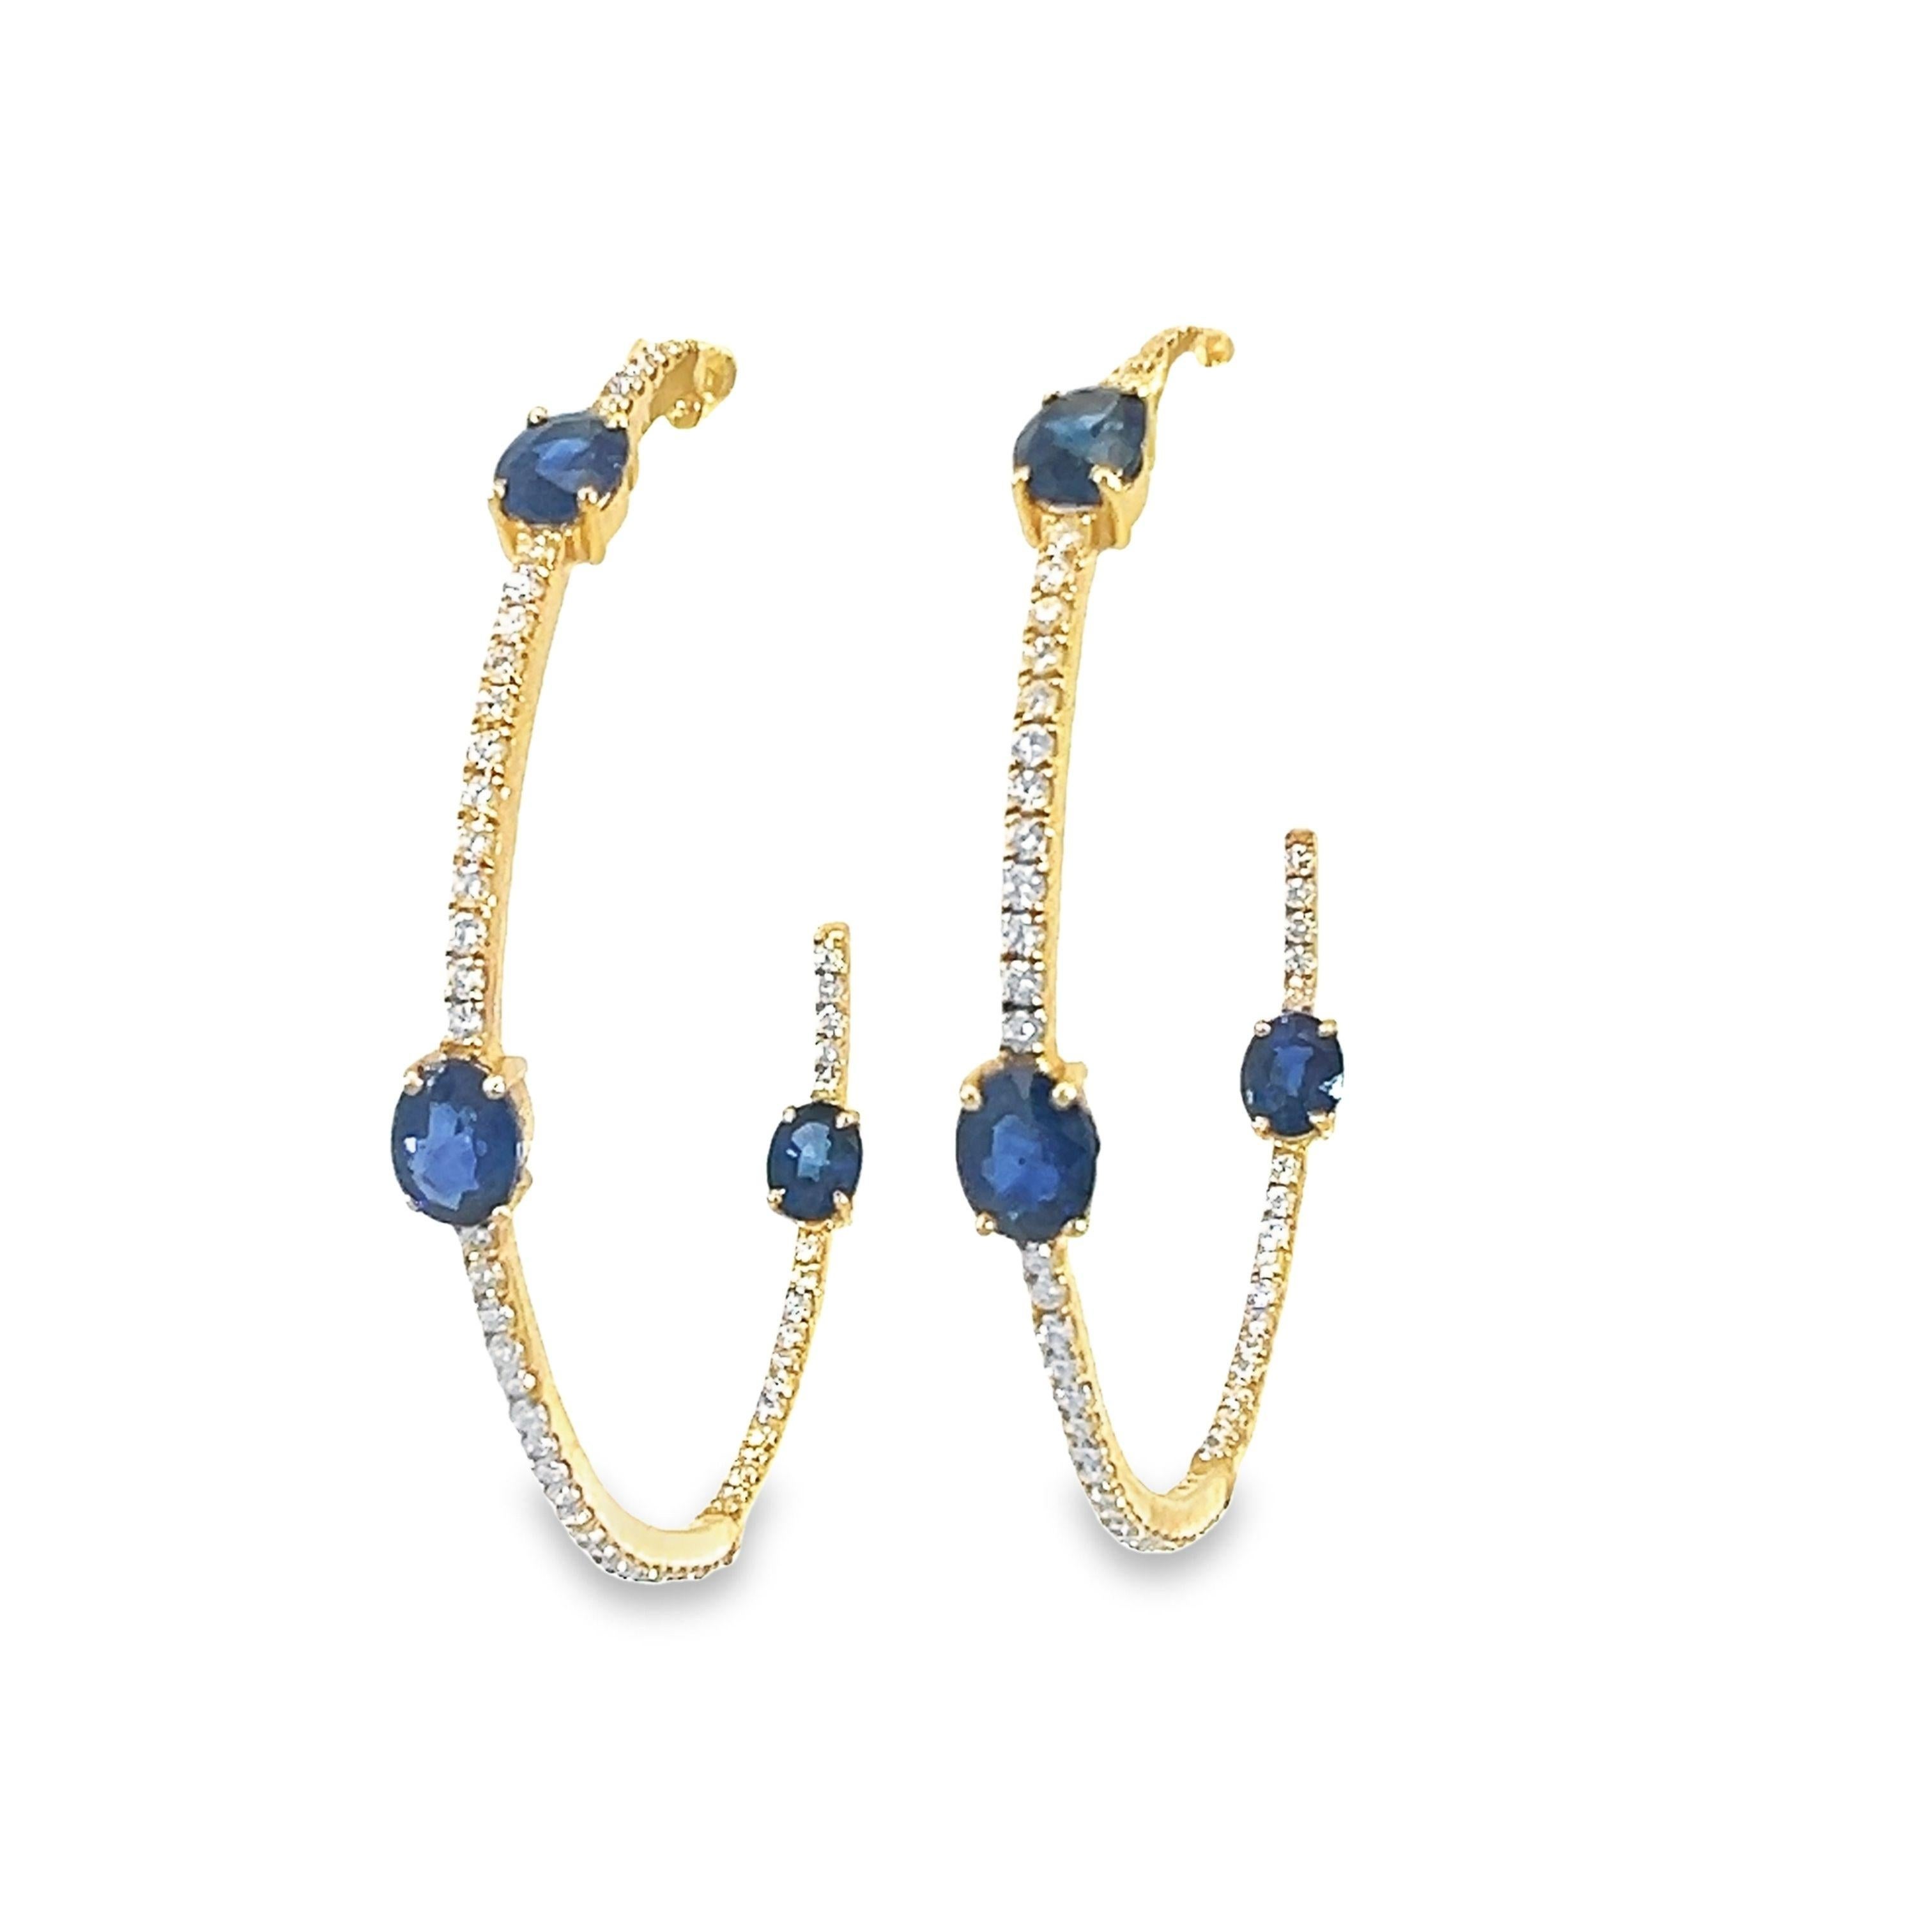 Ein atemberaubendes Paar Ohrringe aus 18 Karat Gelbgold mit einem natürlichen blauen Saphir von 2,74 Karat und Diamanten von 0,81 Karat. 
Diese Ohrringe verleihen jedem Ensemble einen Hauch von Eleganz. Tiefblaue Saphire sind in einem effektvollen